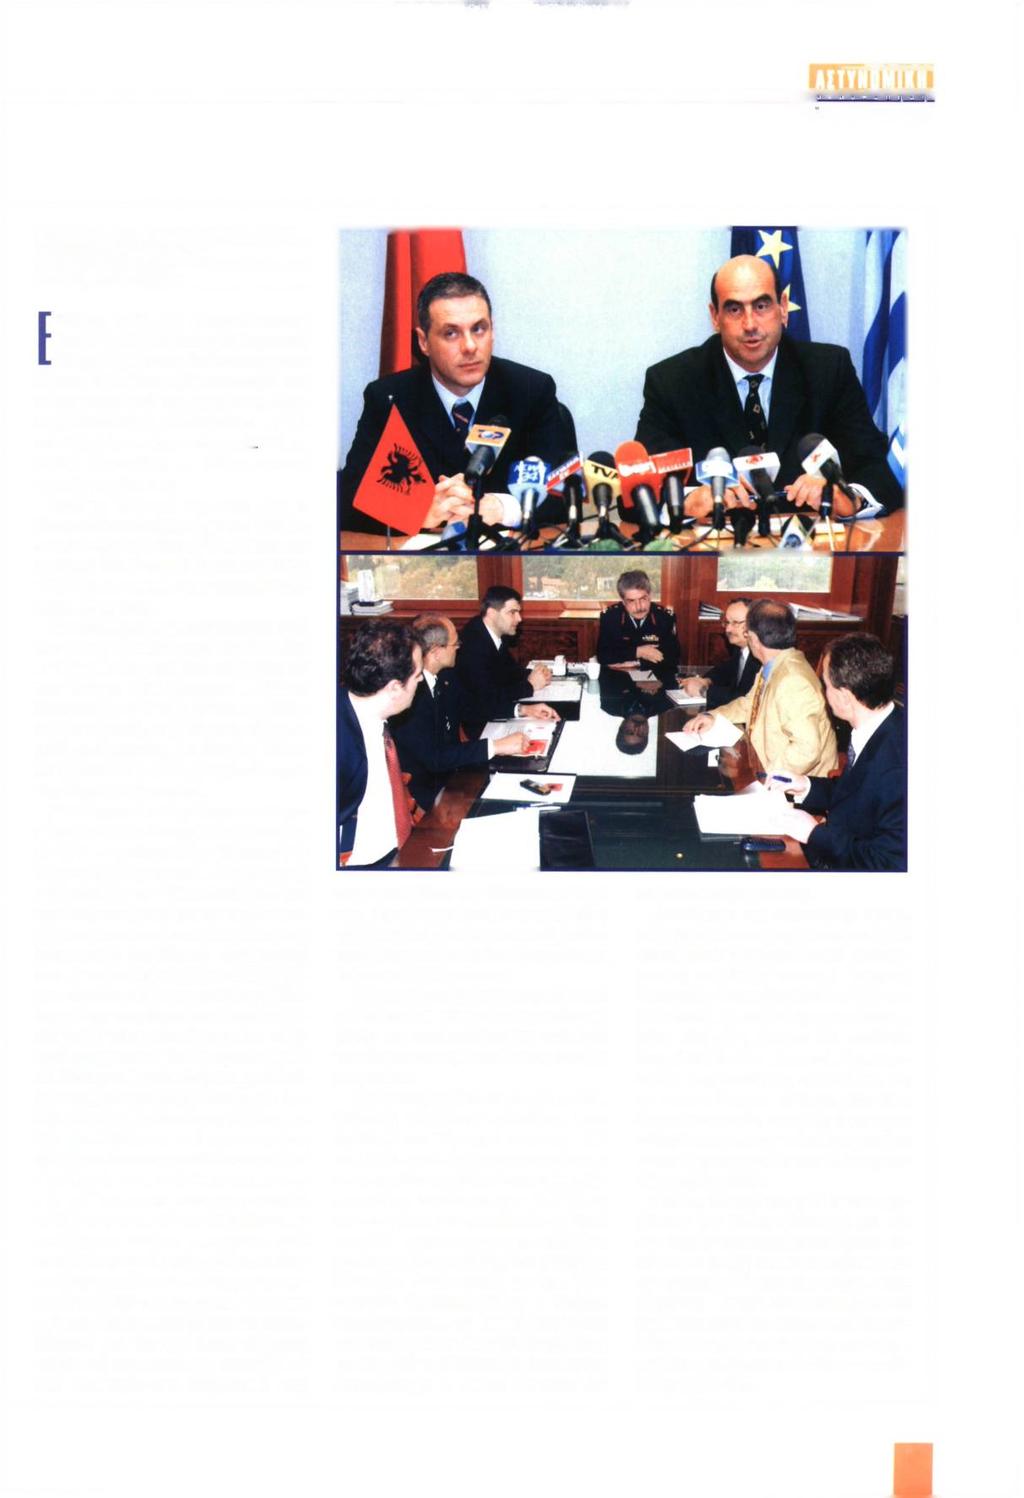 Μ ΜΑΙΟΣ - ΙΟΥΝΙΟΣ 2004 ΕΠΙΣΚΕΨΗ ΤΟΥ ΥΠΟΥΡΓΟΥ ΔΗΜΟΣΙΑΣ ΤΑΞΗΣ ΣΤΗΝ ΑΛΒΑΝΙΑ πίσημη επίσκεψη πραγματοποίησε στις 14.4.2004 ο Υπουργός Δημόσιας Τάξης κ. Γεώργιος Βουλγαράκης στα Τίρανα. Ο κ.